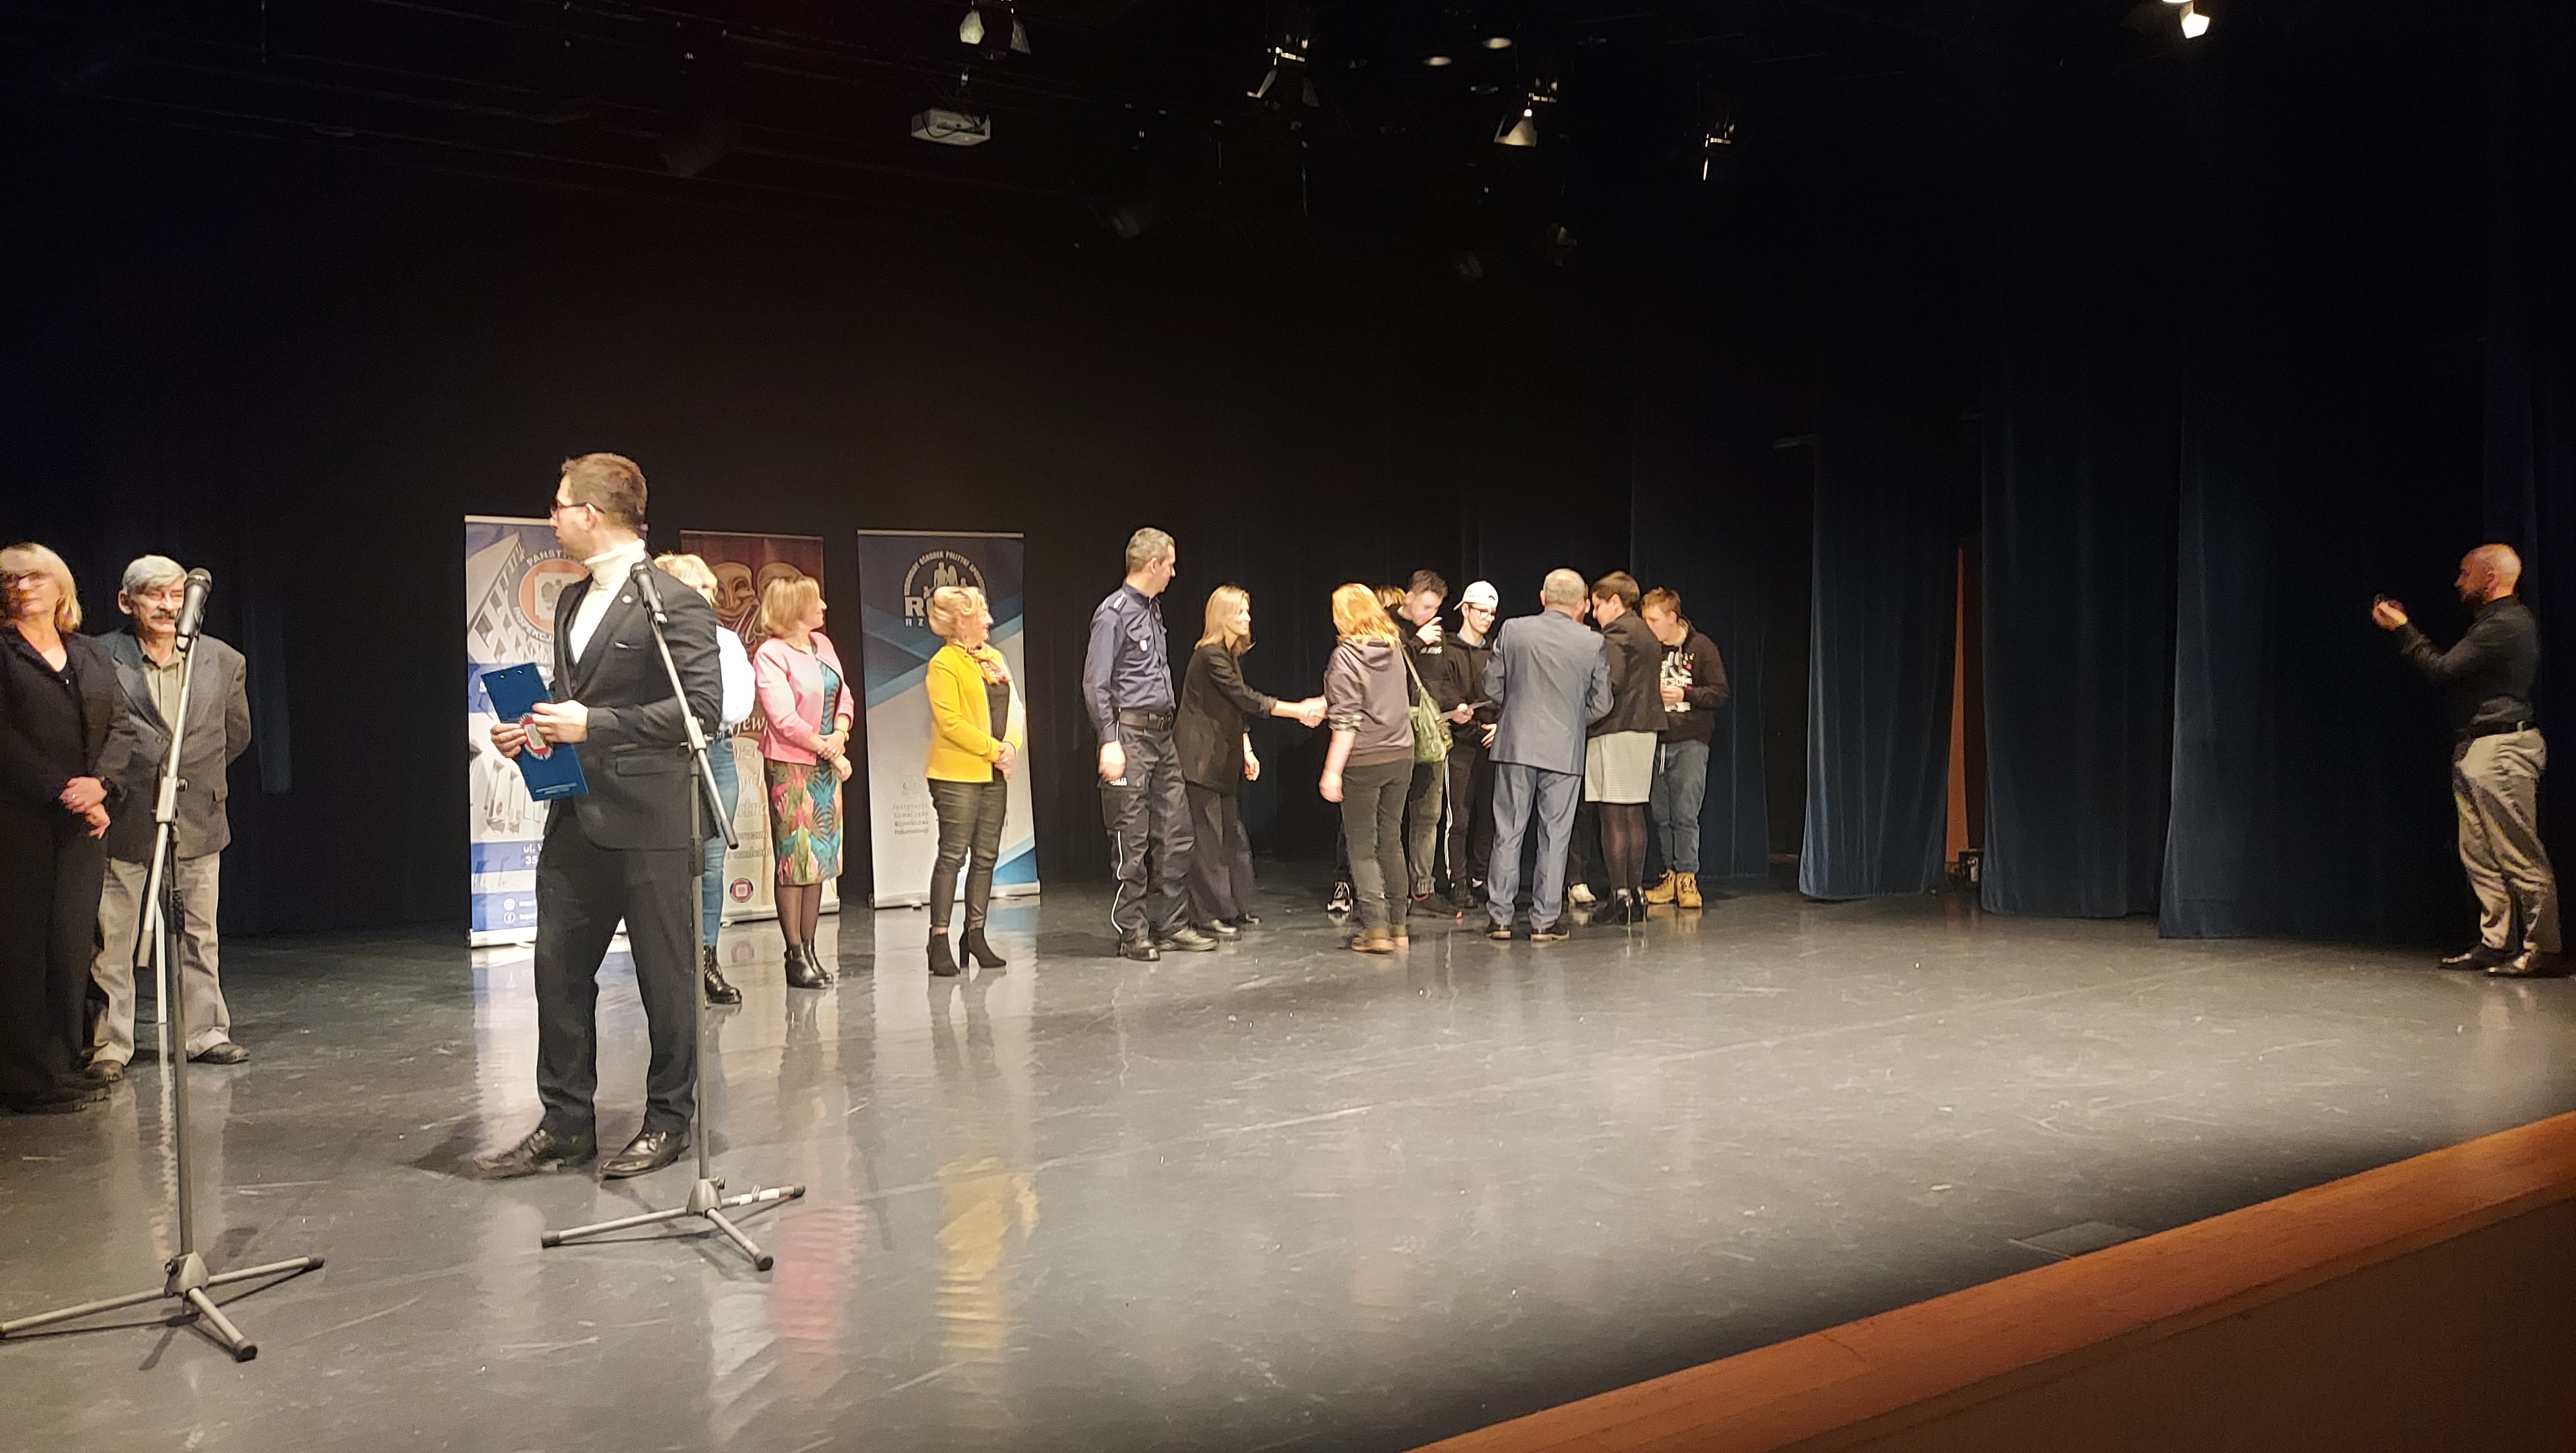 Nasz sukces w Rzeszowie | Wychowankowie MOW z opiekunem stoją na scenie, członkowie jury podają im ręce gratulując sukcesu..jpg